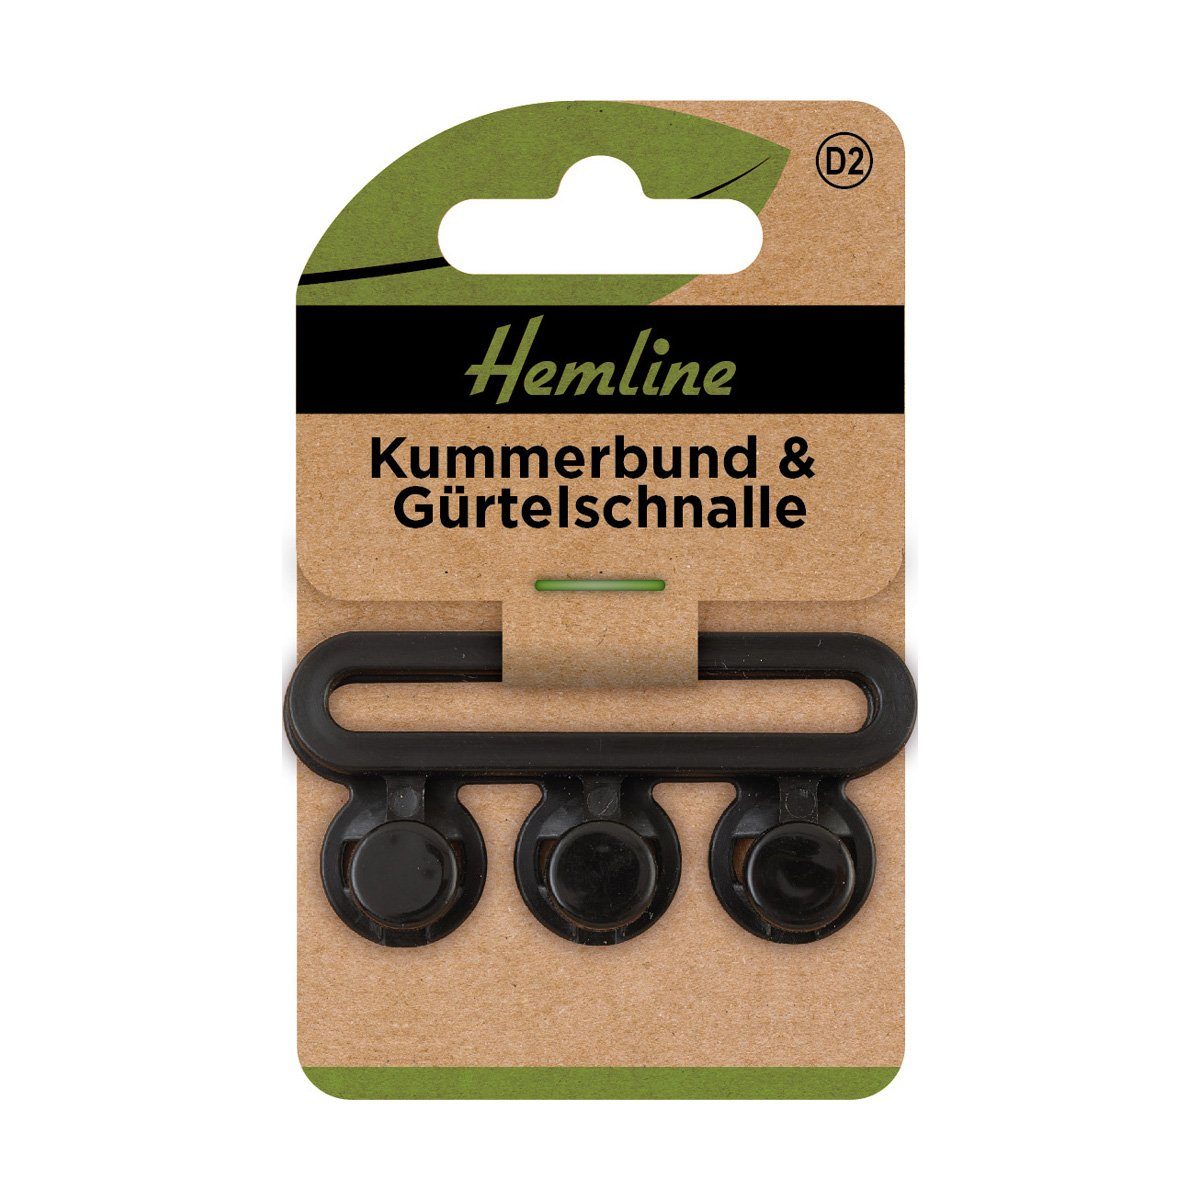 Hemline Gürtelerweiterung Kummerbund & Gürtelschnalle